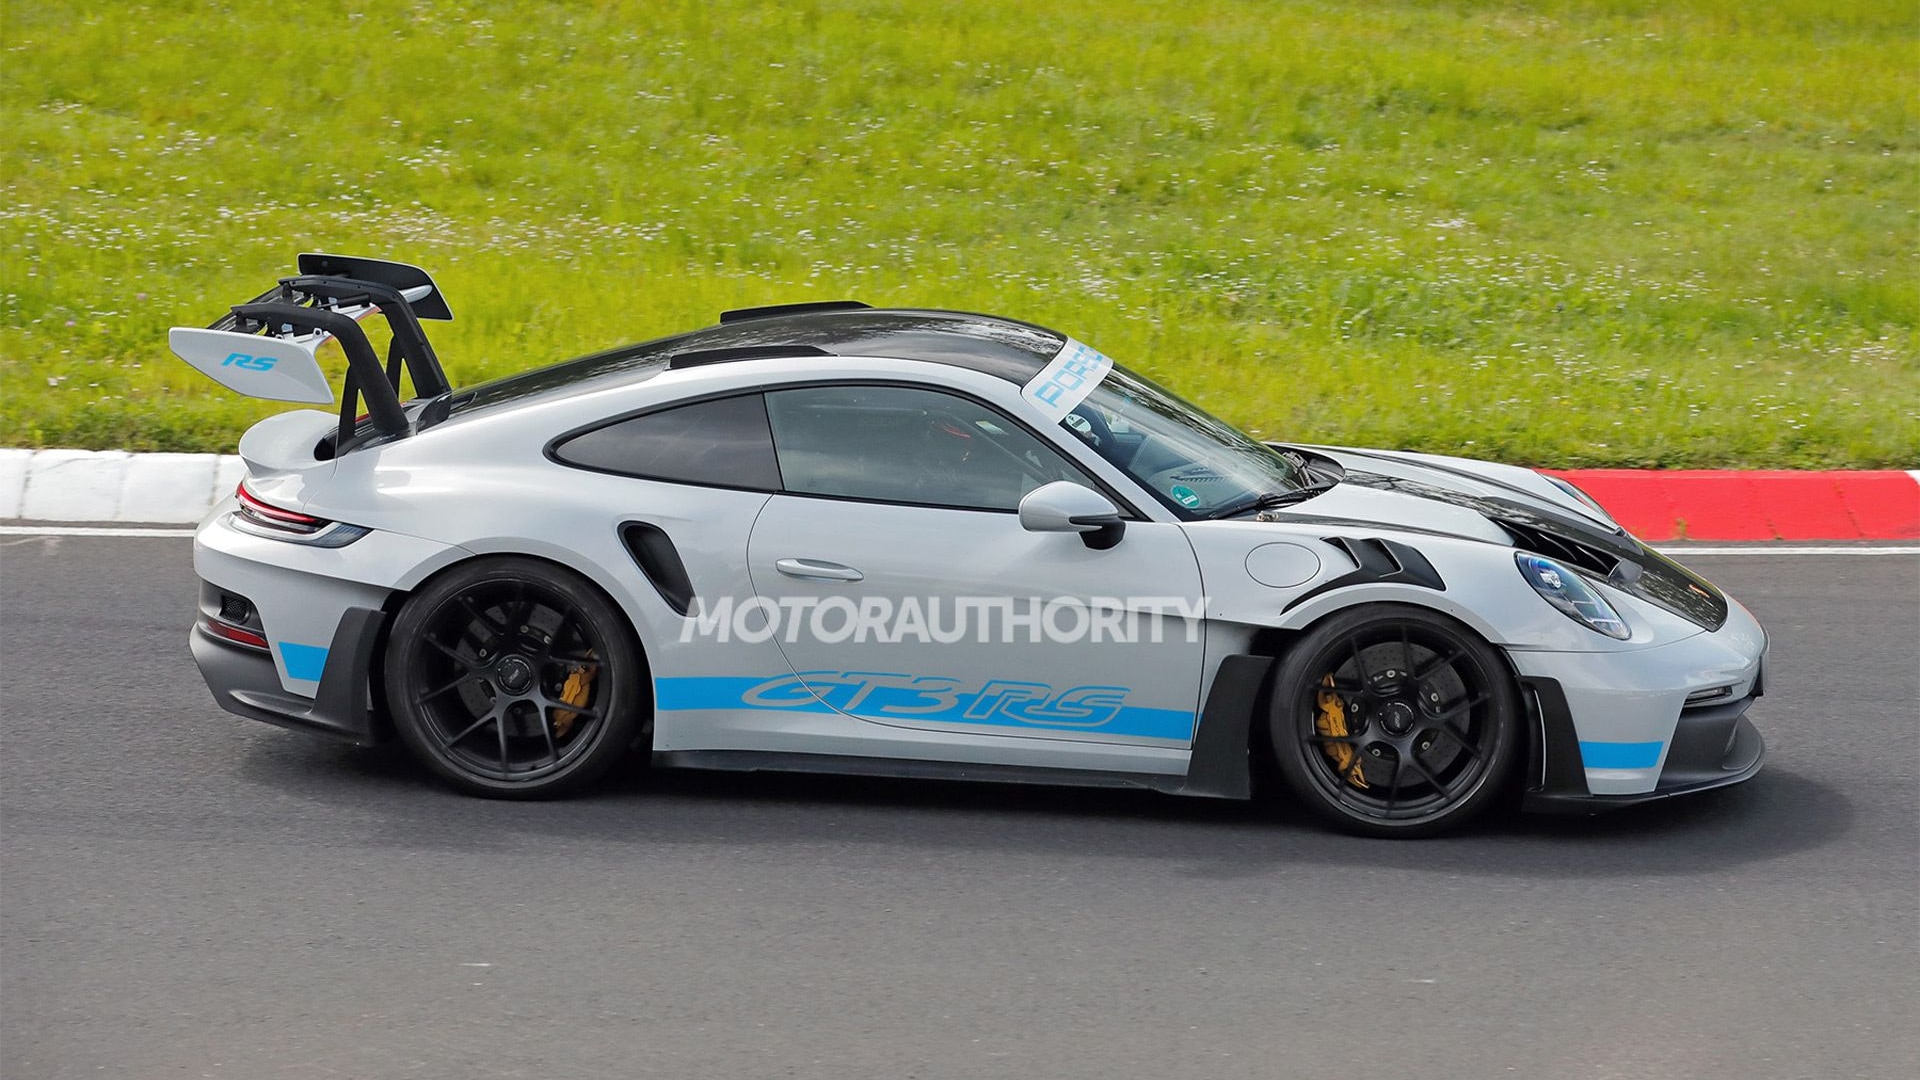 2027 Porsche 911 GT2 RS test mule spy shots - Photo credit: Baldauf